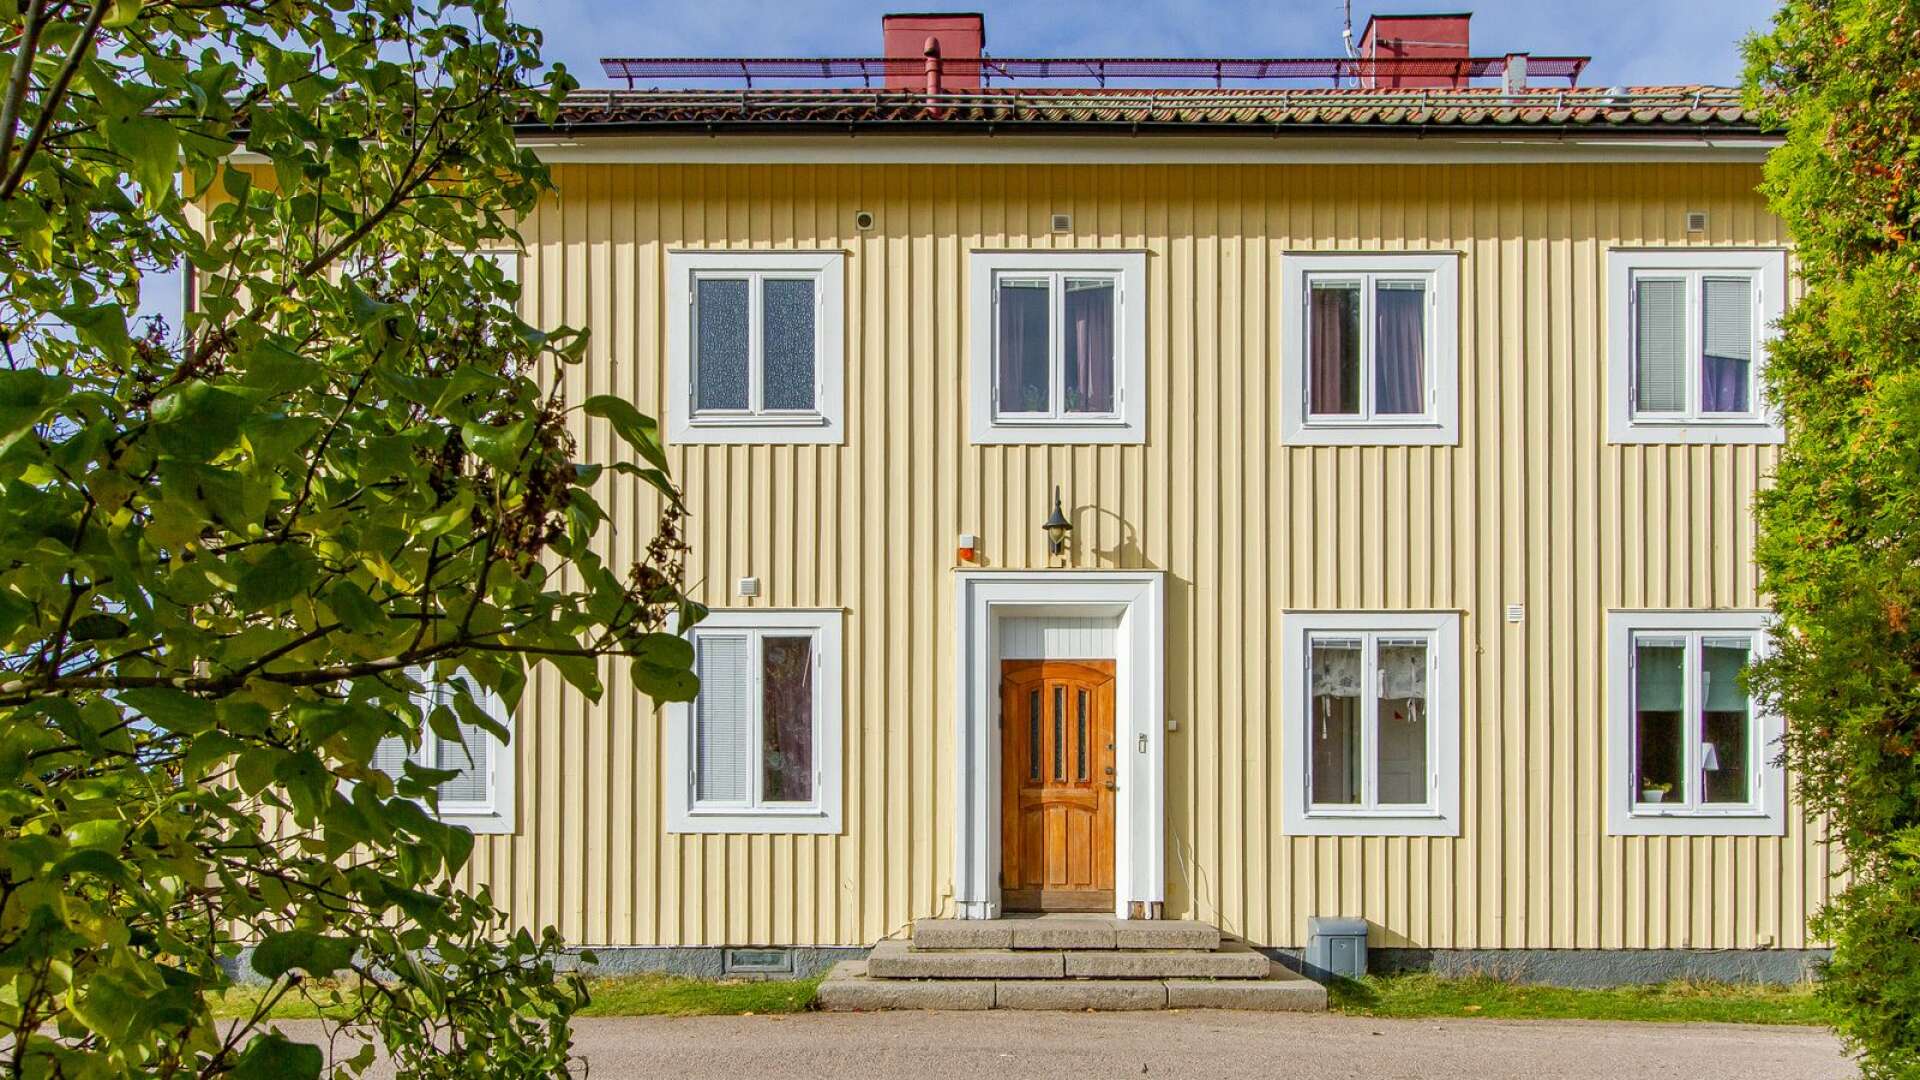 Det före detta HVB-hemmet Prästgården är till salu och ute för försäljning med ett utgångspris på tre miljoner kronor.